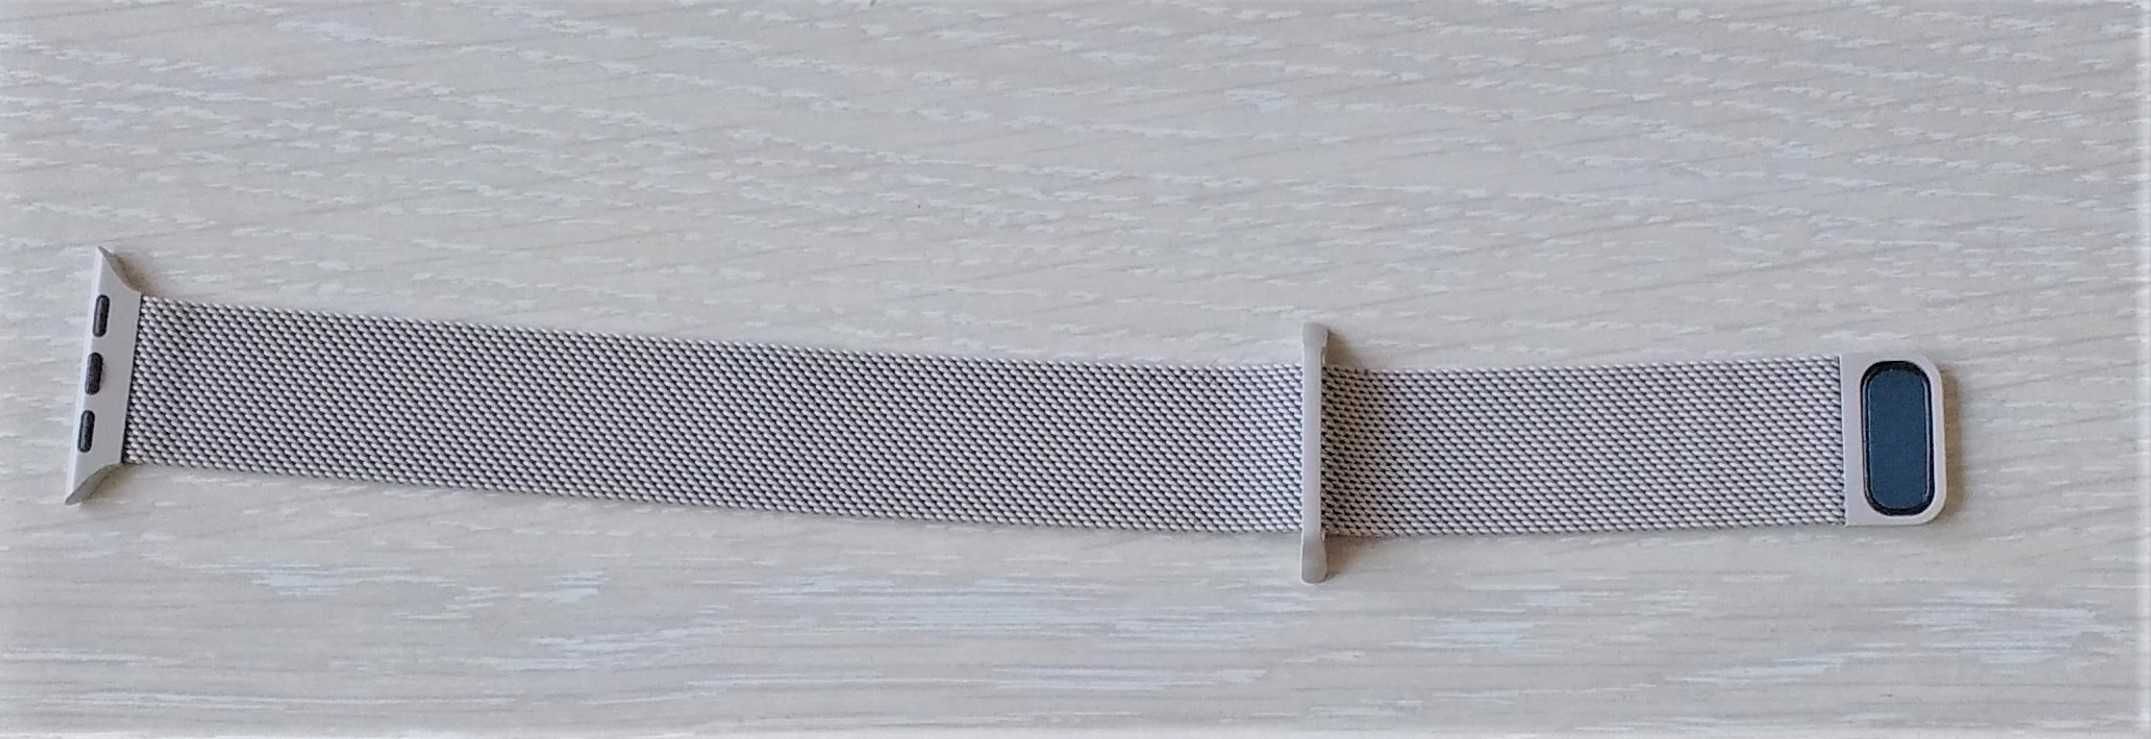 Ремешок миланская петля для Эппл Вотч / Apple Watch 42 мм, серый